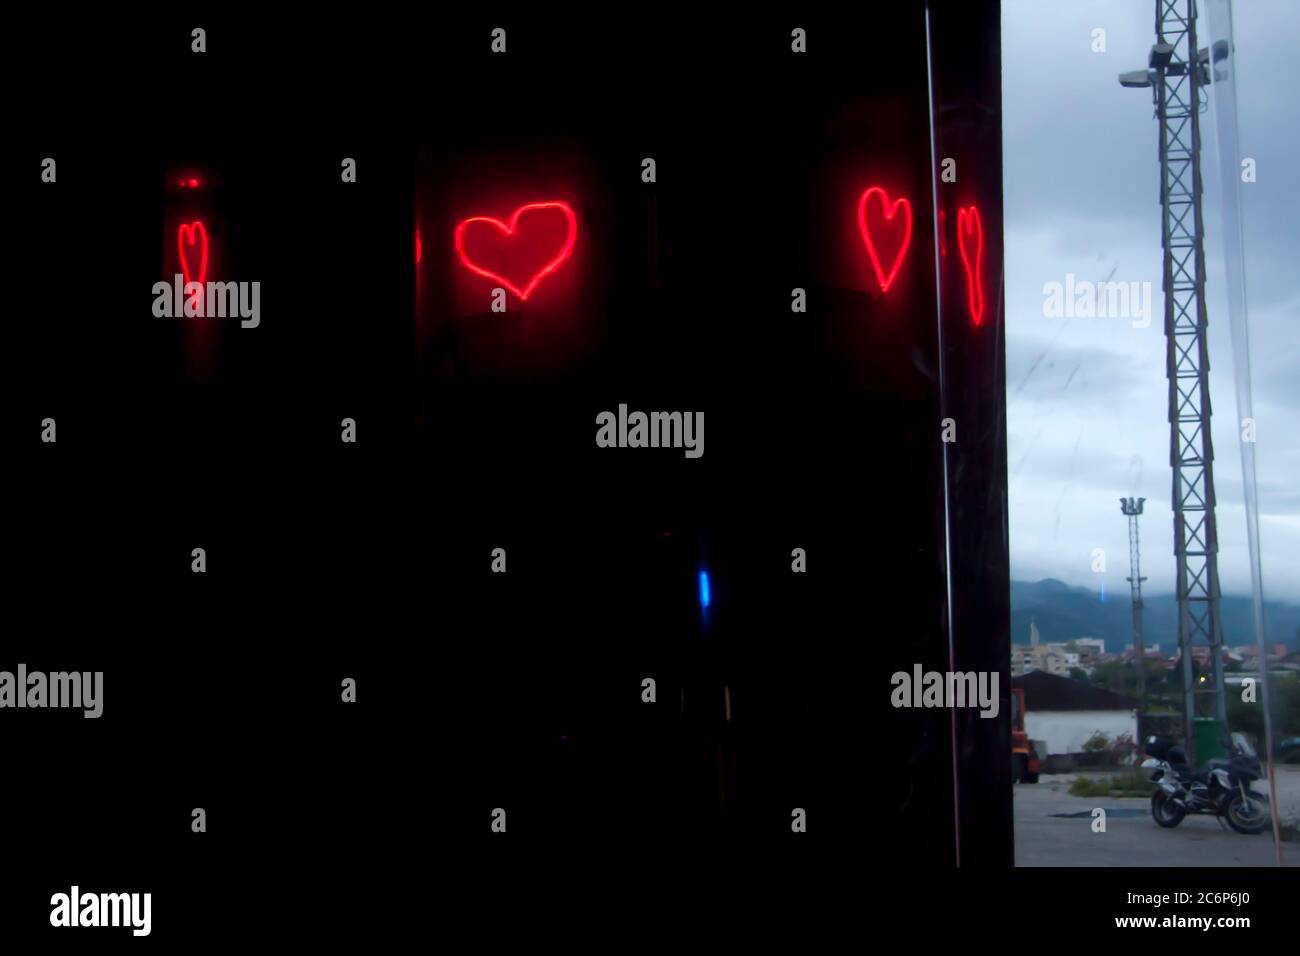 Neonlicht leuchtend rote Herzreflexionen auf dem transparenten Kunststoffschirm Stockfoto